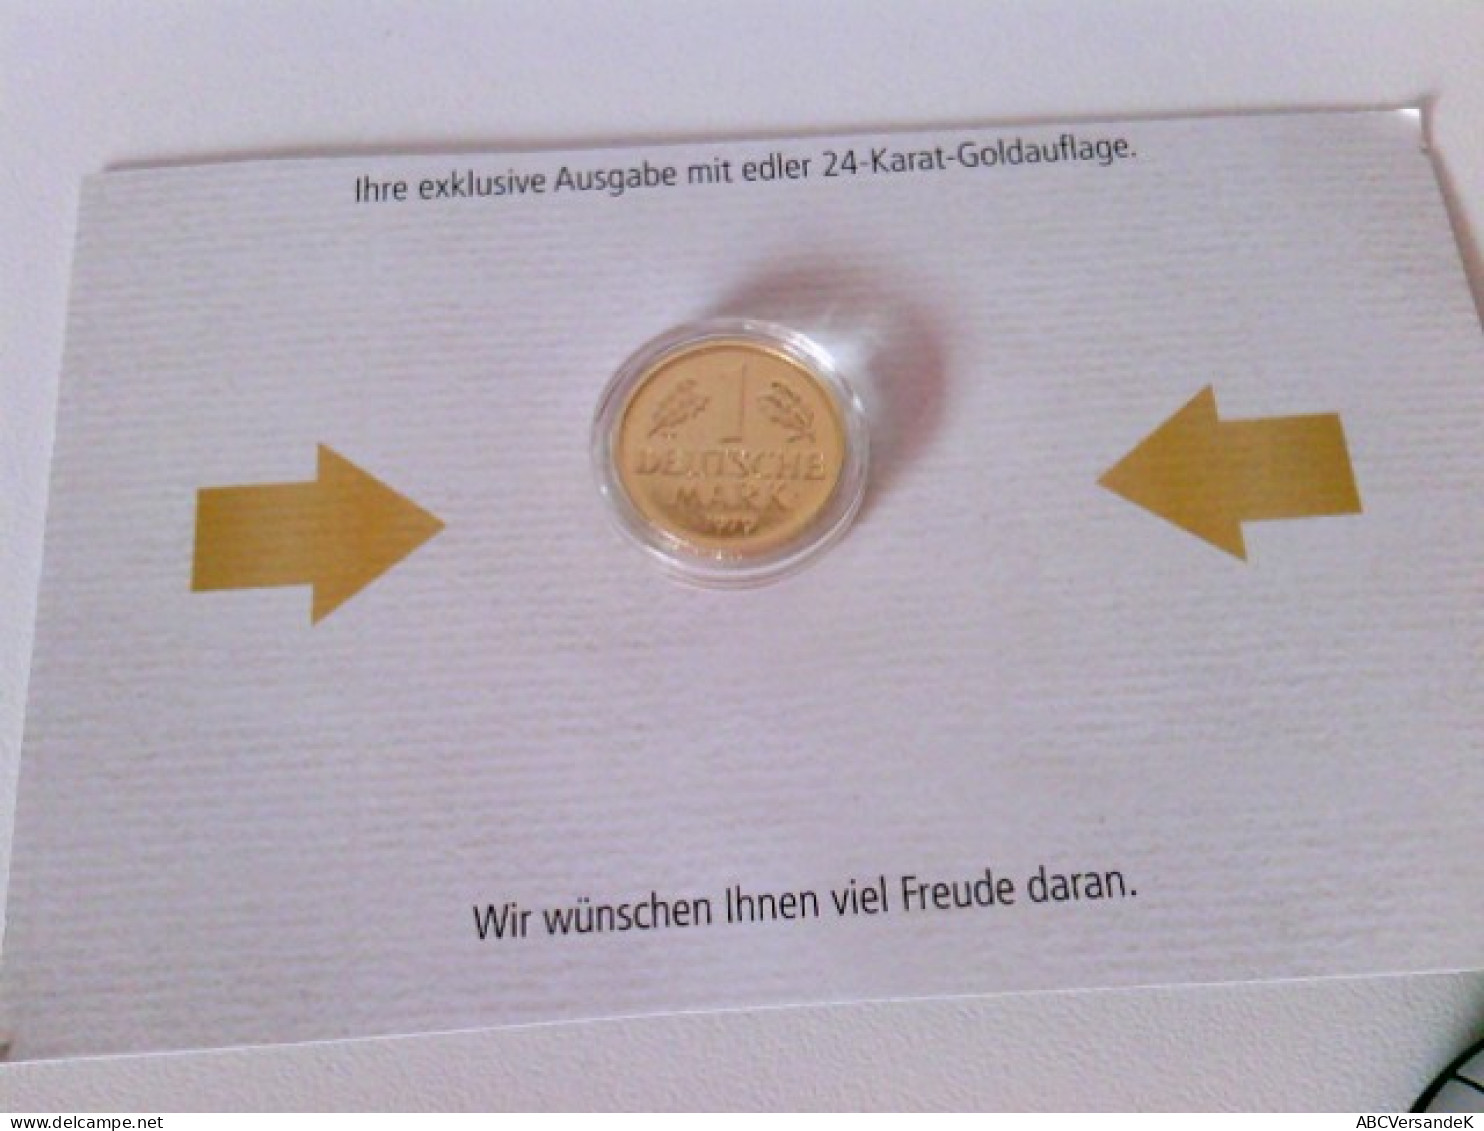 Münzen/ Medaillen: Hier 5 X 1 DM 1971, 1979, 1980, 1990, 1991 Vergoldet, Deutsche Mark Mit 24 Karat Goldauflag - Numismatiek